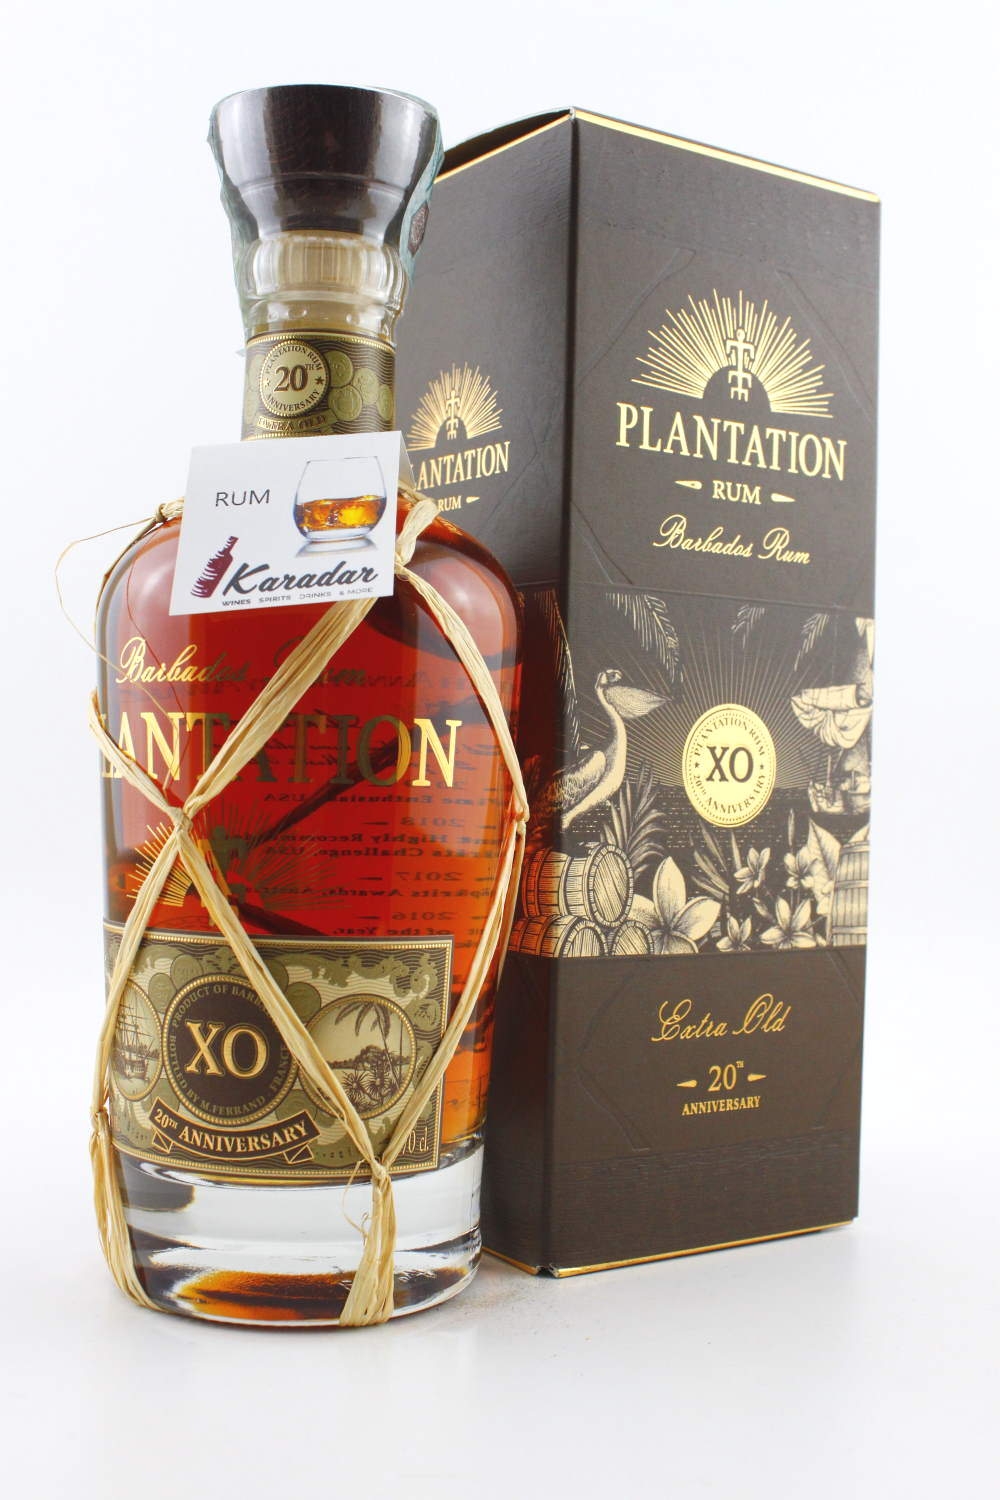 Rum Barbados XO Plantation 20th anniversary 40% vol. Plantation